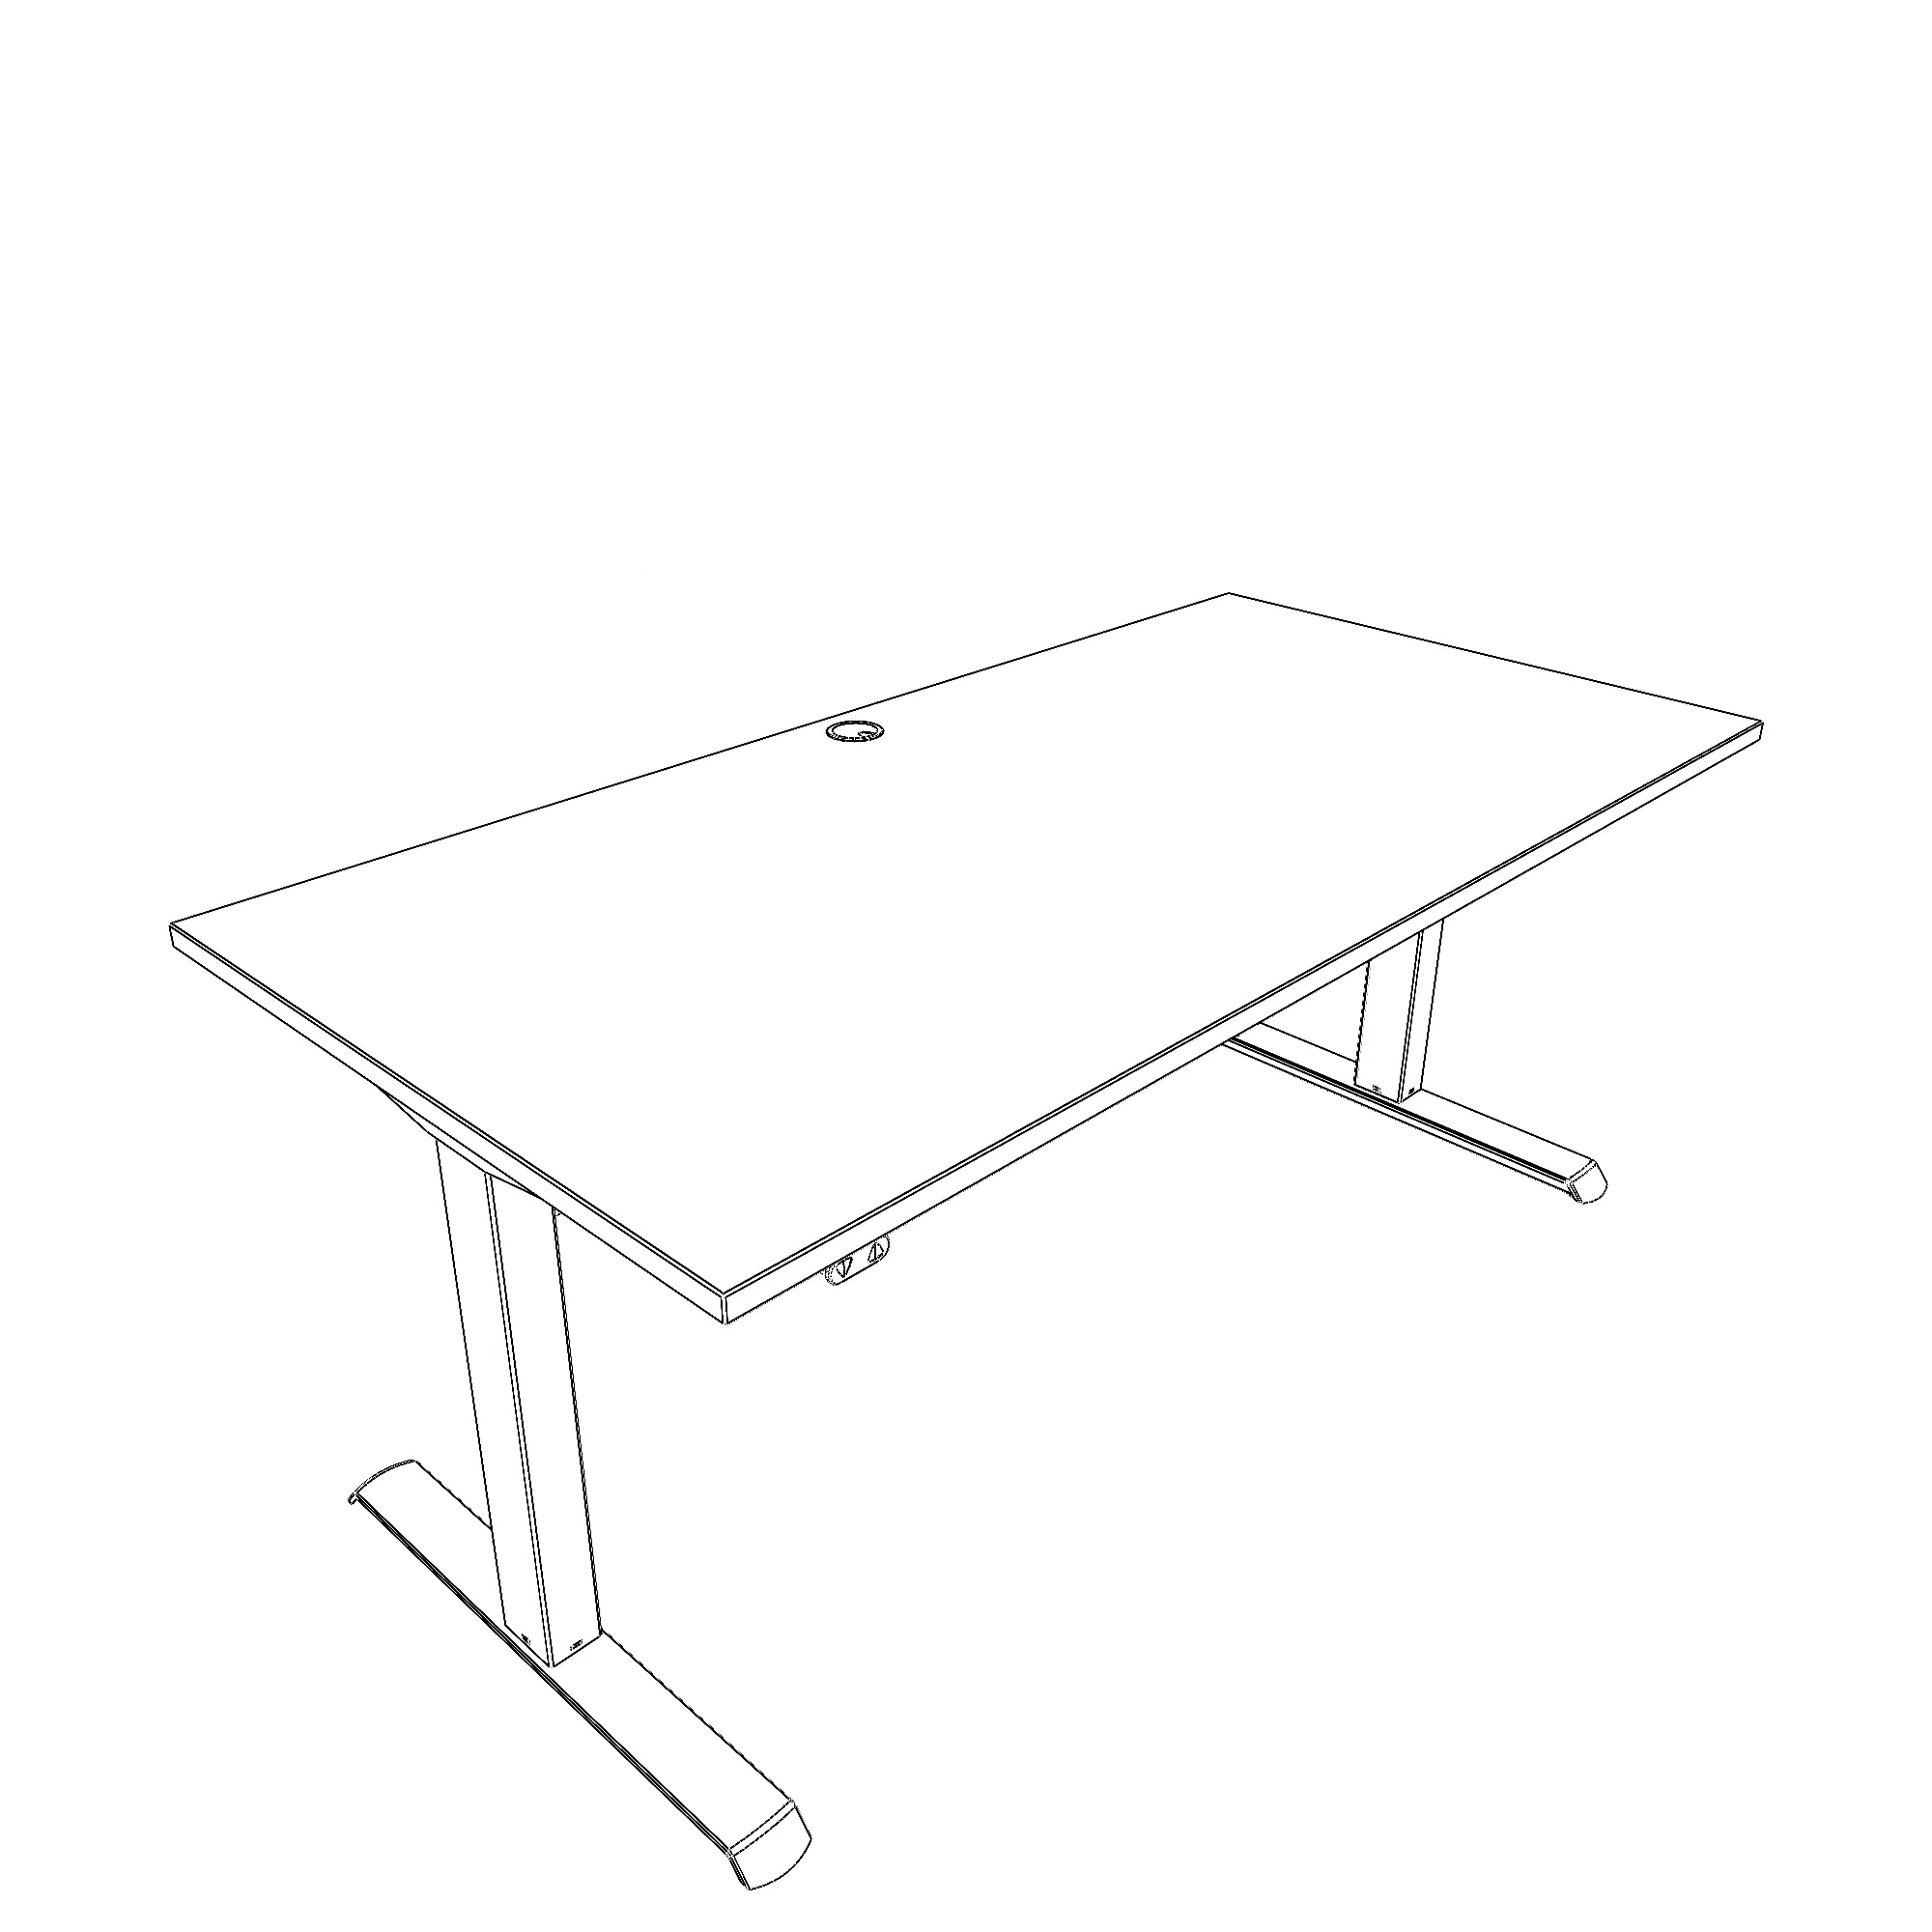 Schreibtisch steh/sitz | 160x80 cm | Weiß mit schwarzem Gestell